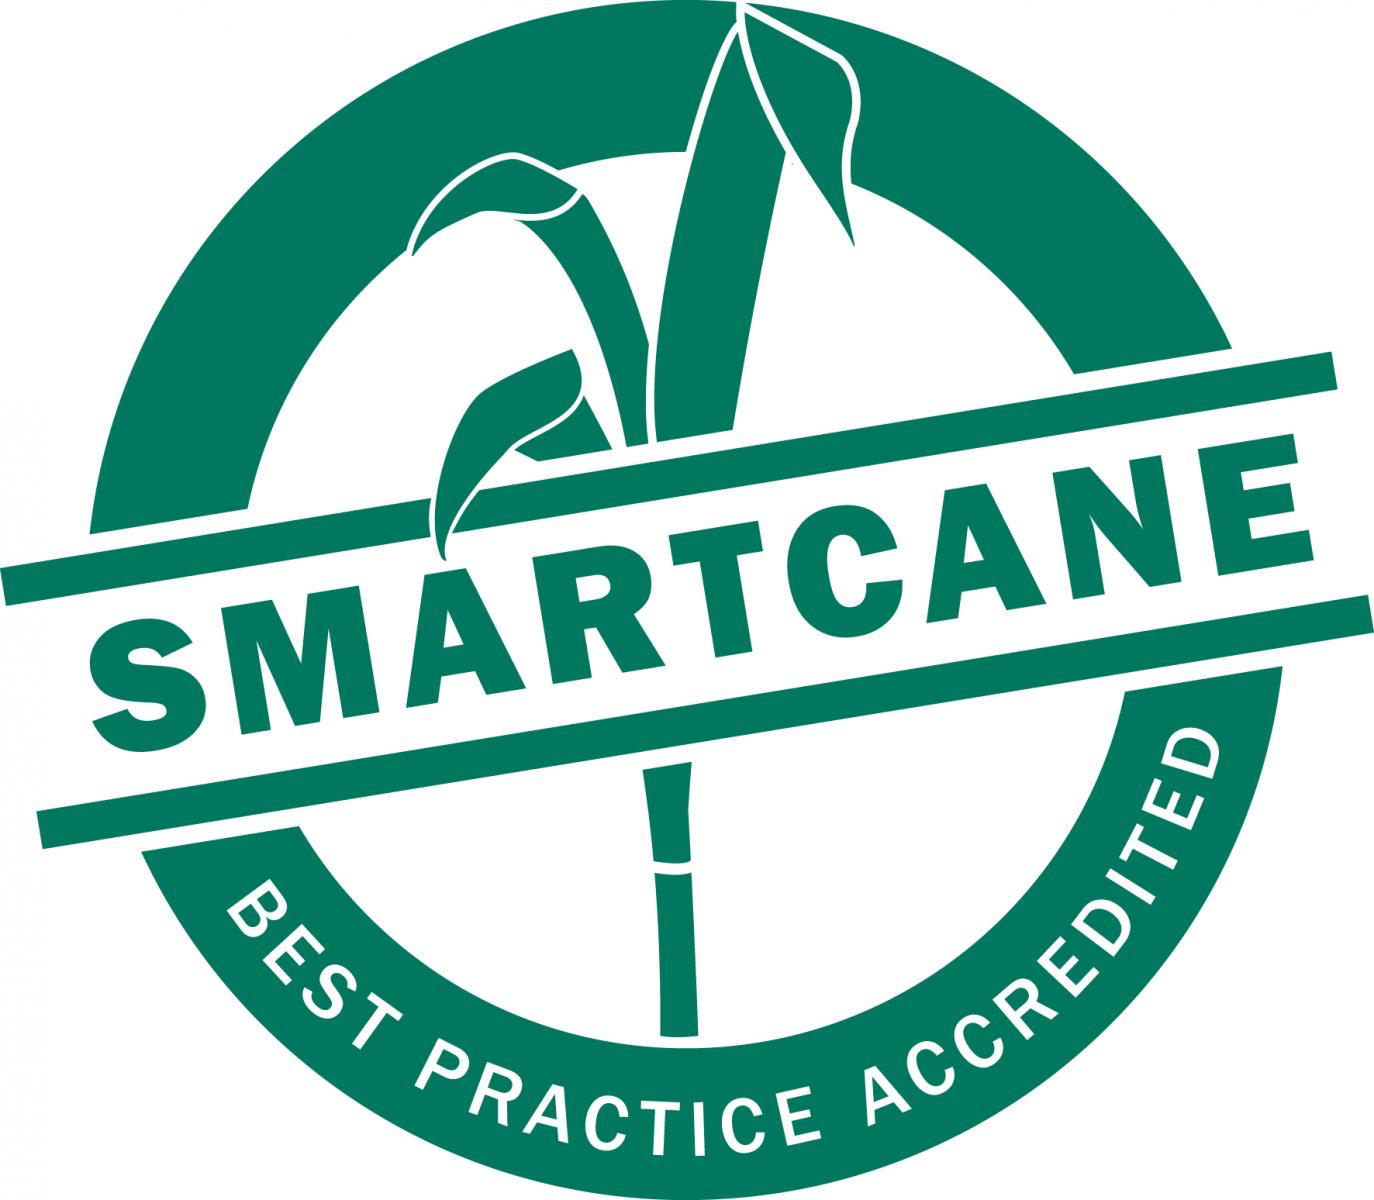 Smartcane logo